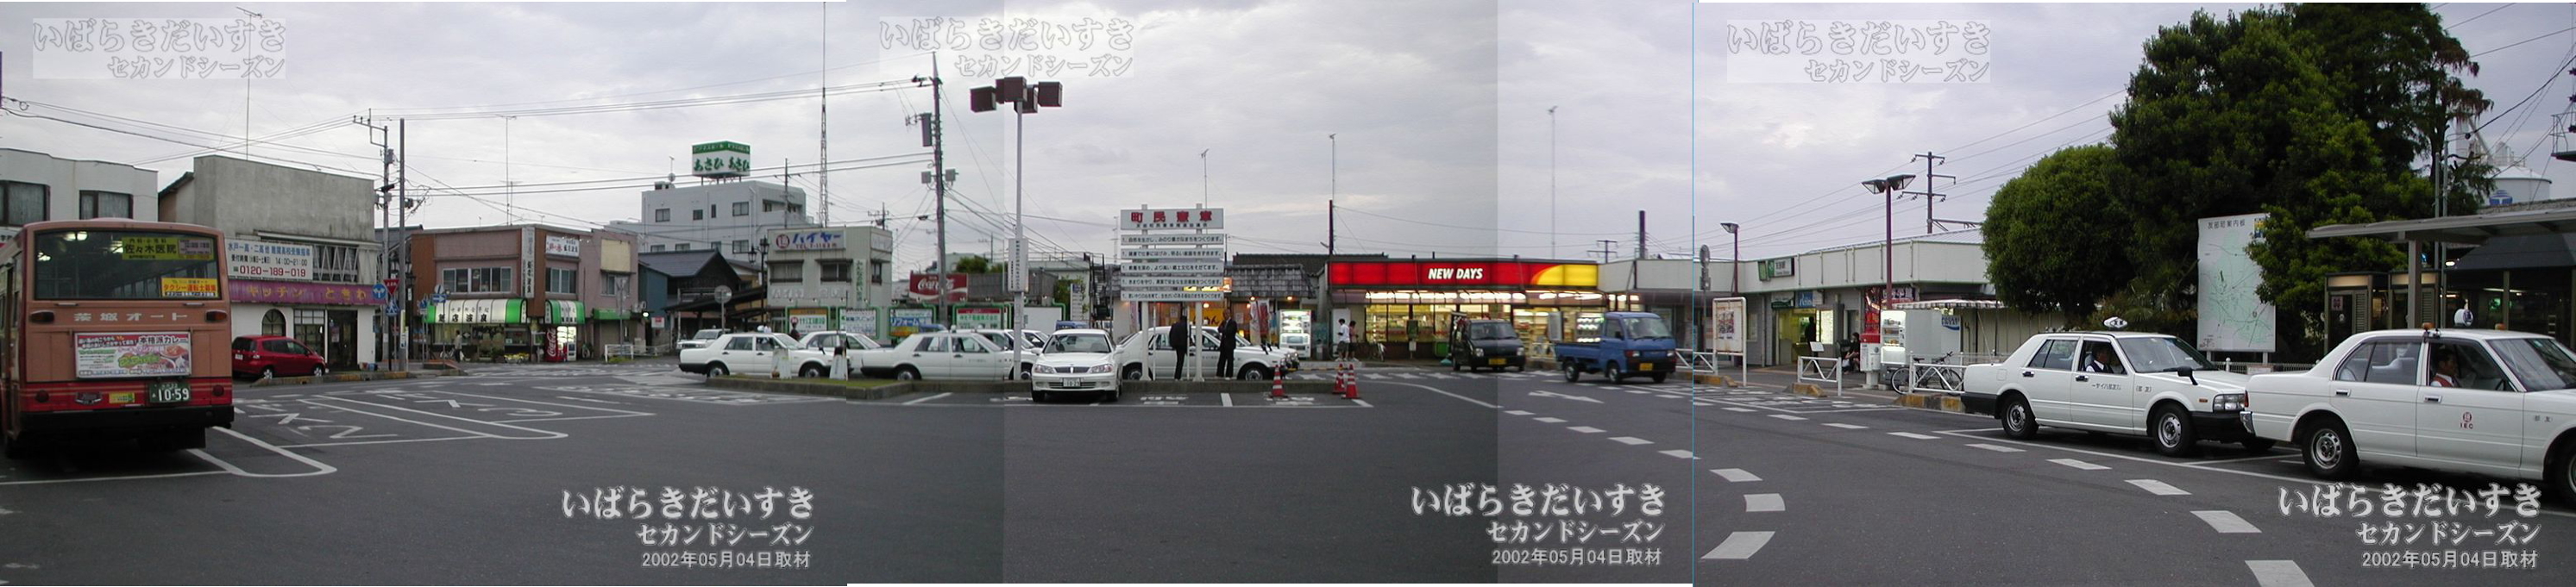 友部駅 駅前の風景 その1（2002年撮影）